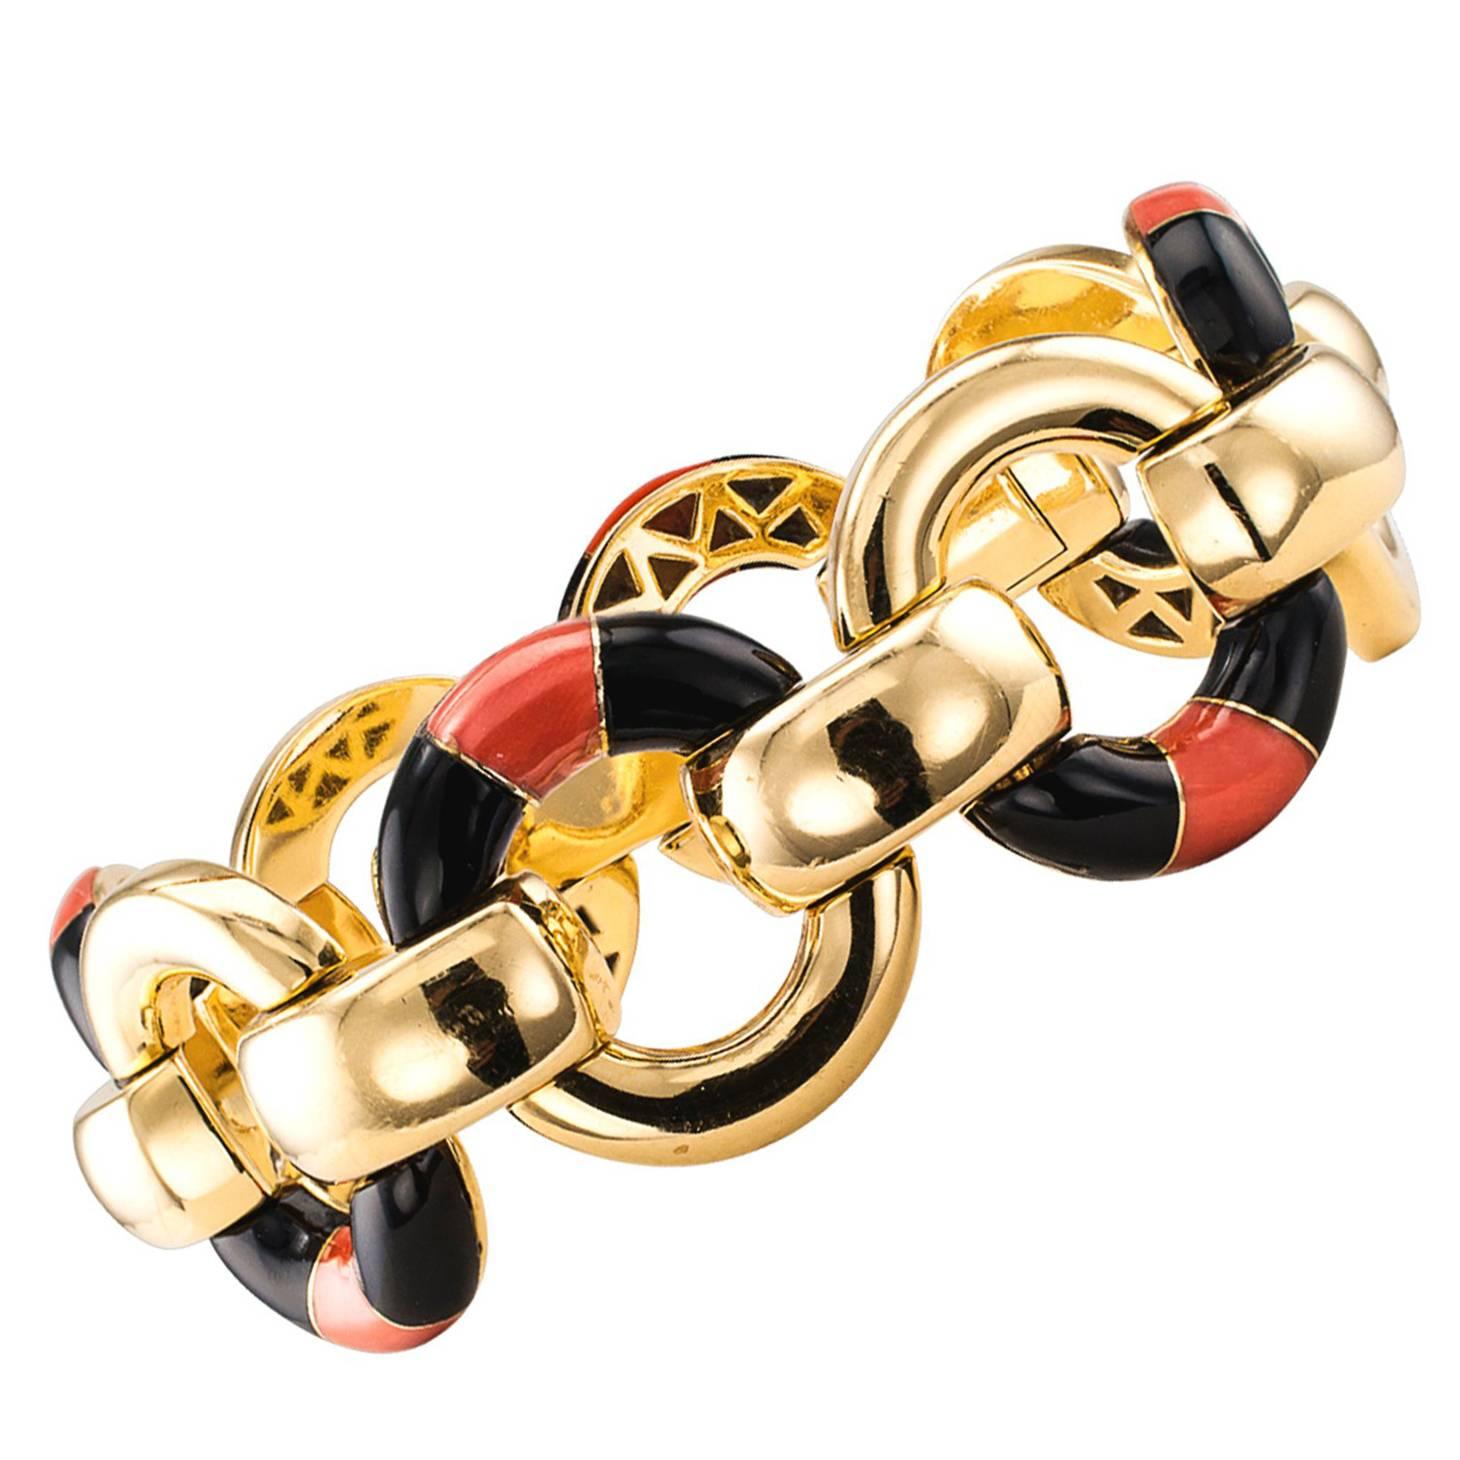 Coral Onyx Gold Link Bracelet